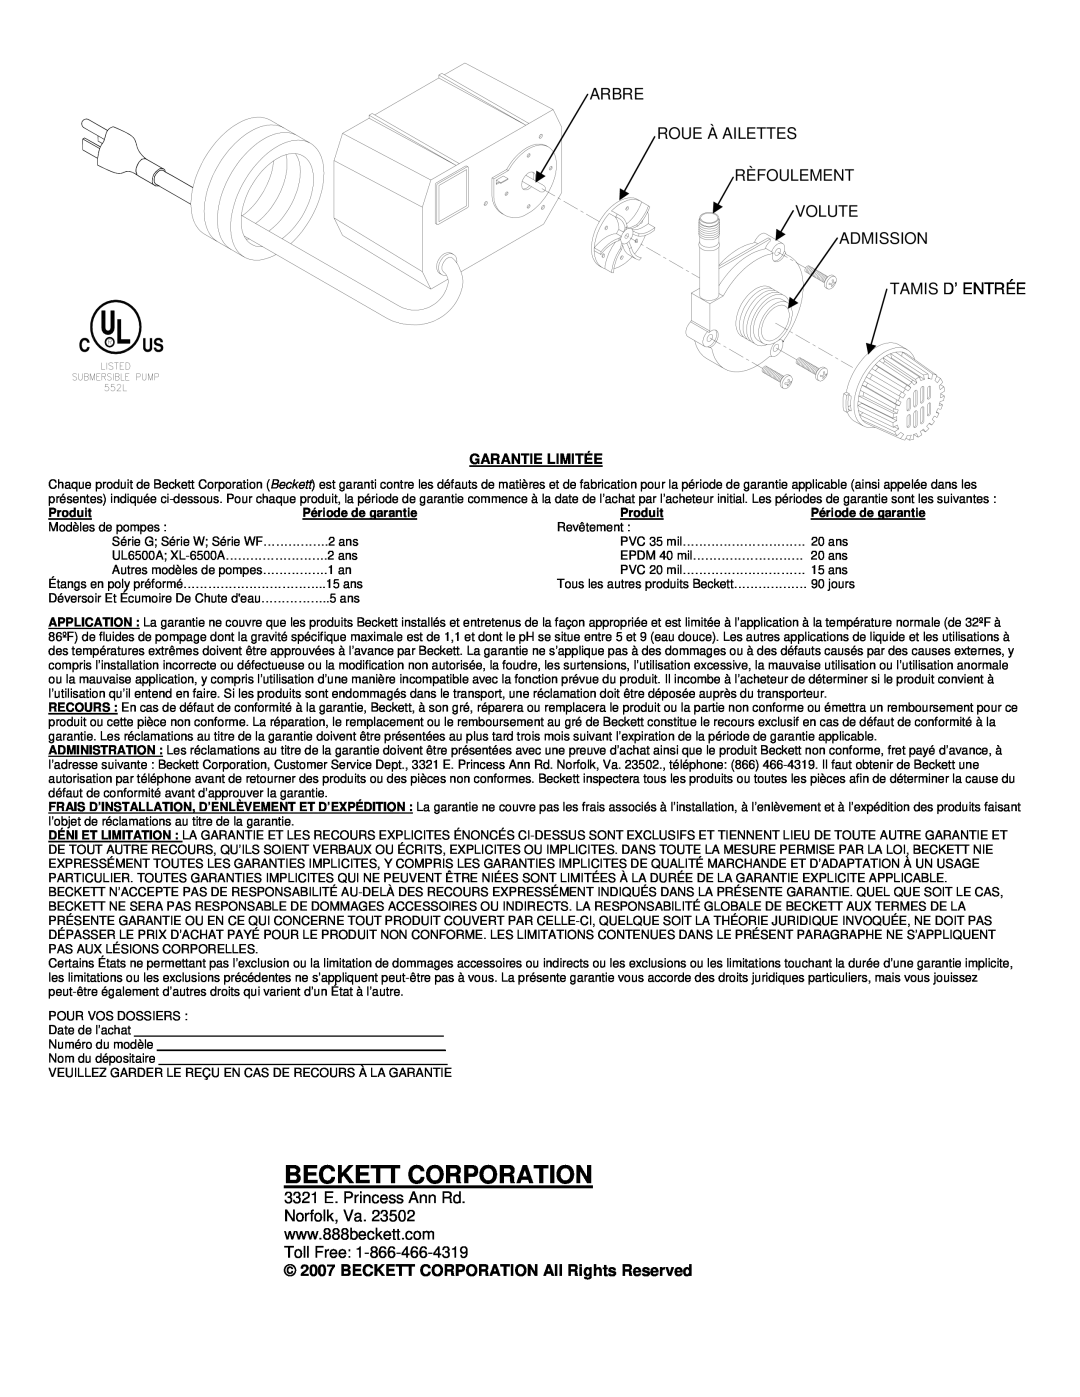 Beckett Water Gardening G535, G325 Beckett Corporation, BECKETT CORPORATION All Rights Reserved, Garantie Limitée, Produit 